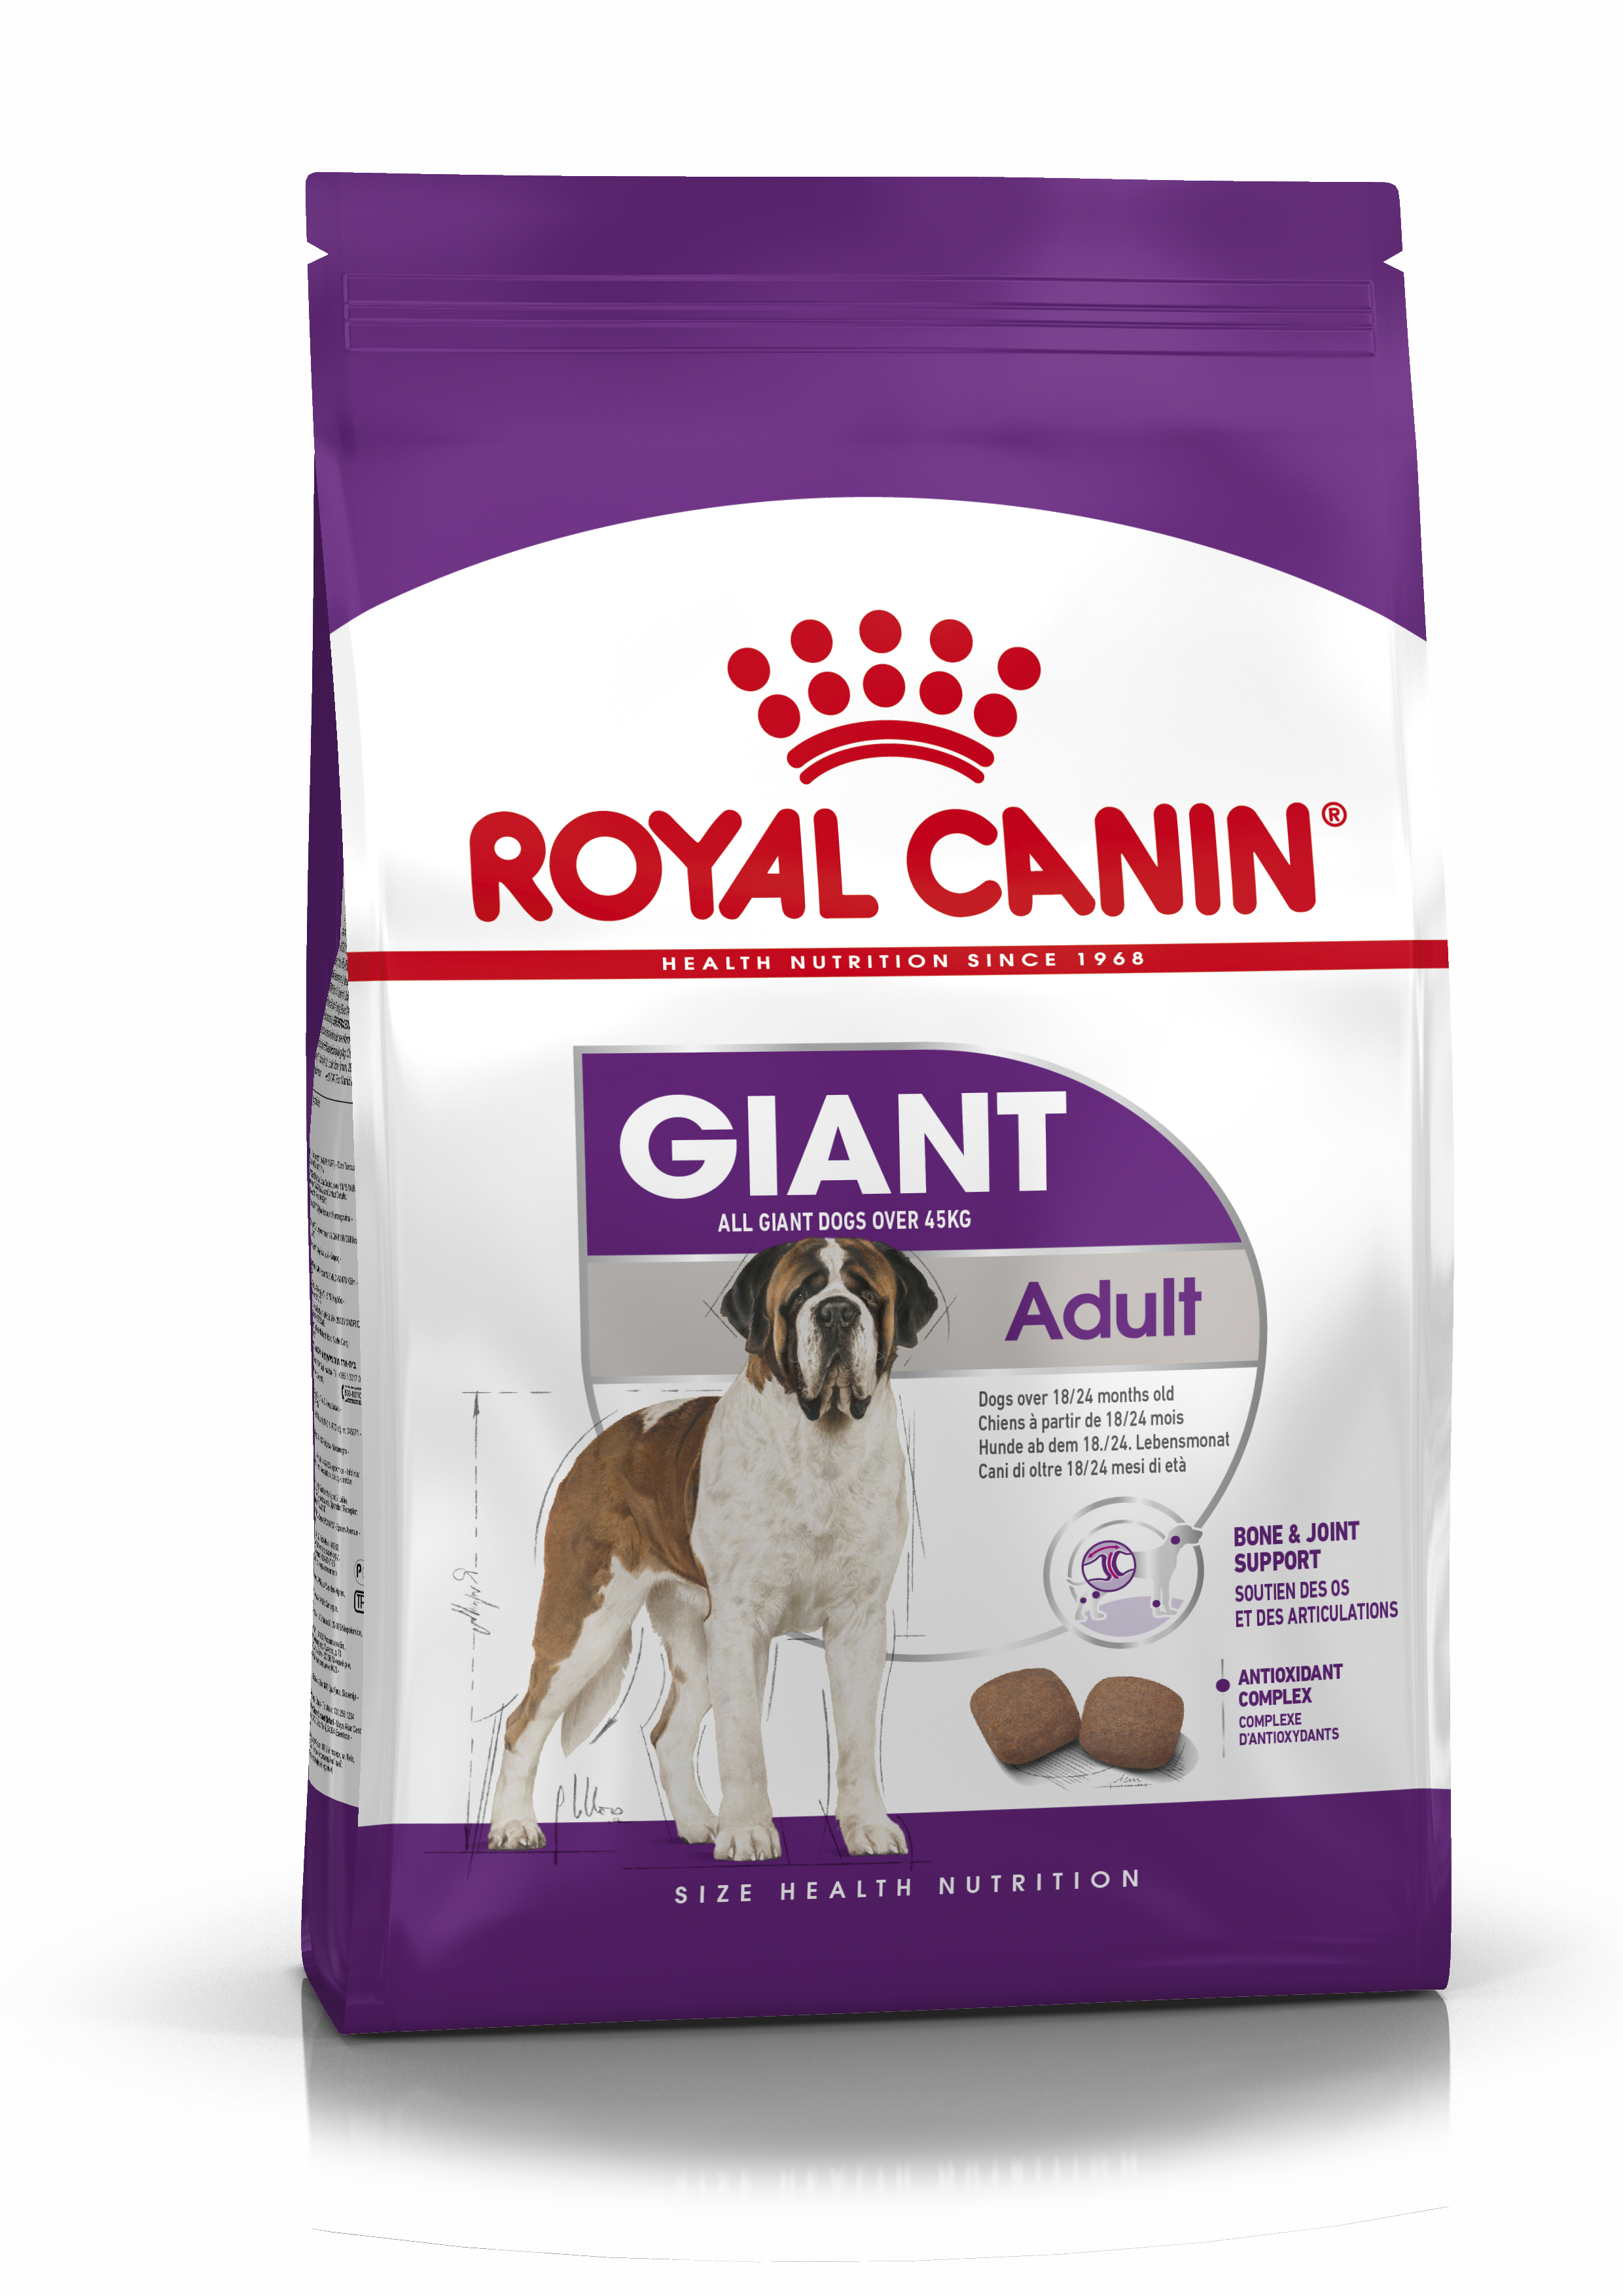 Afbeelding Royal Canin Giant adult hondenvoer 2 x 15 kg door Brekz.nl